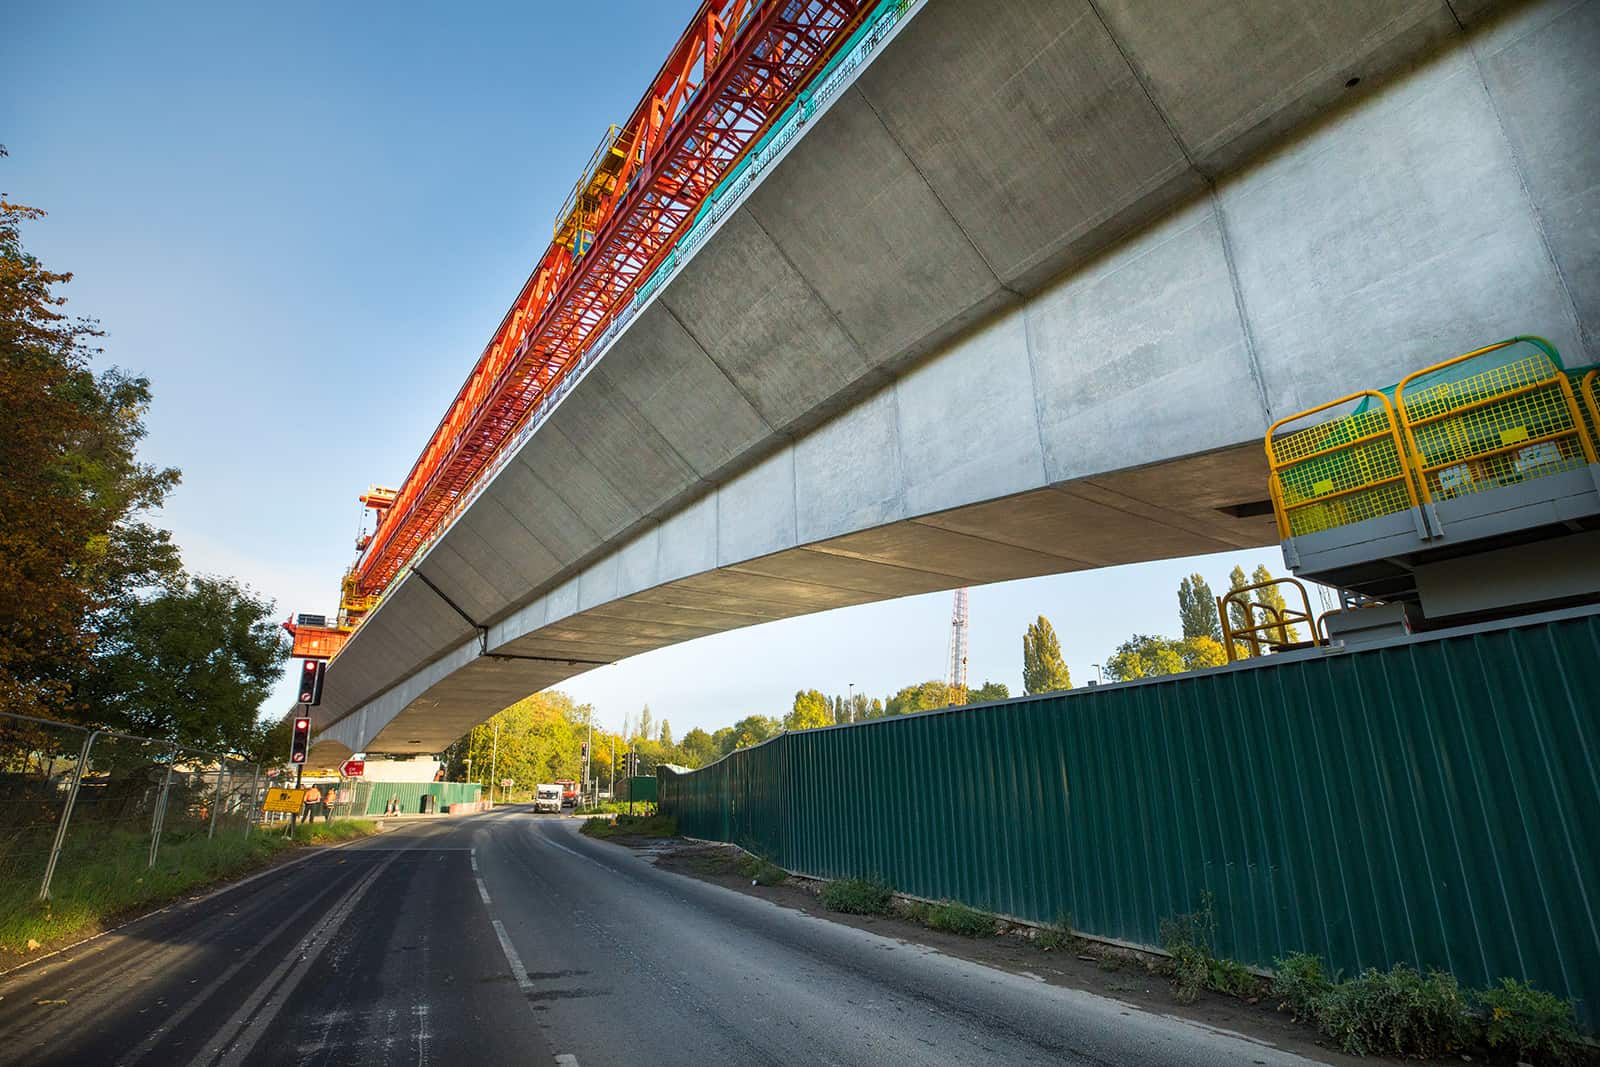 In pictures: UK’s longest railway bridge under construction